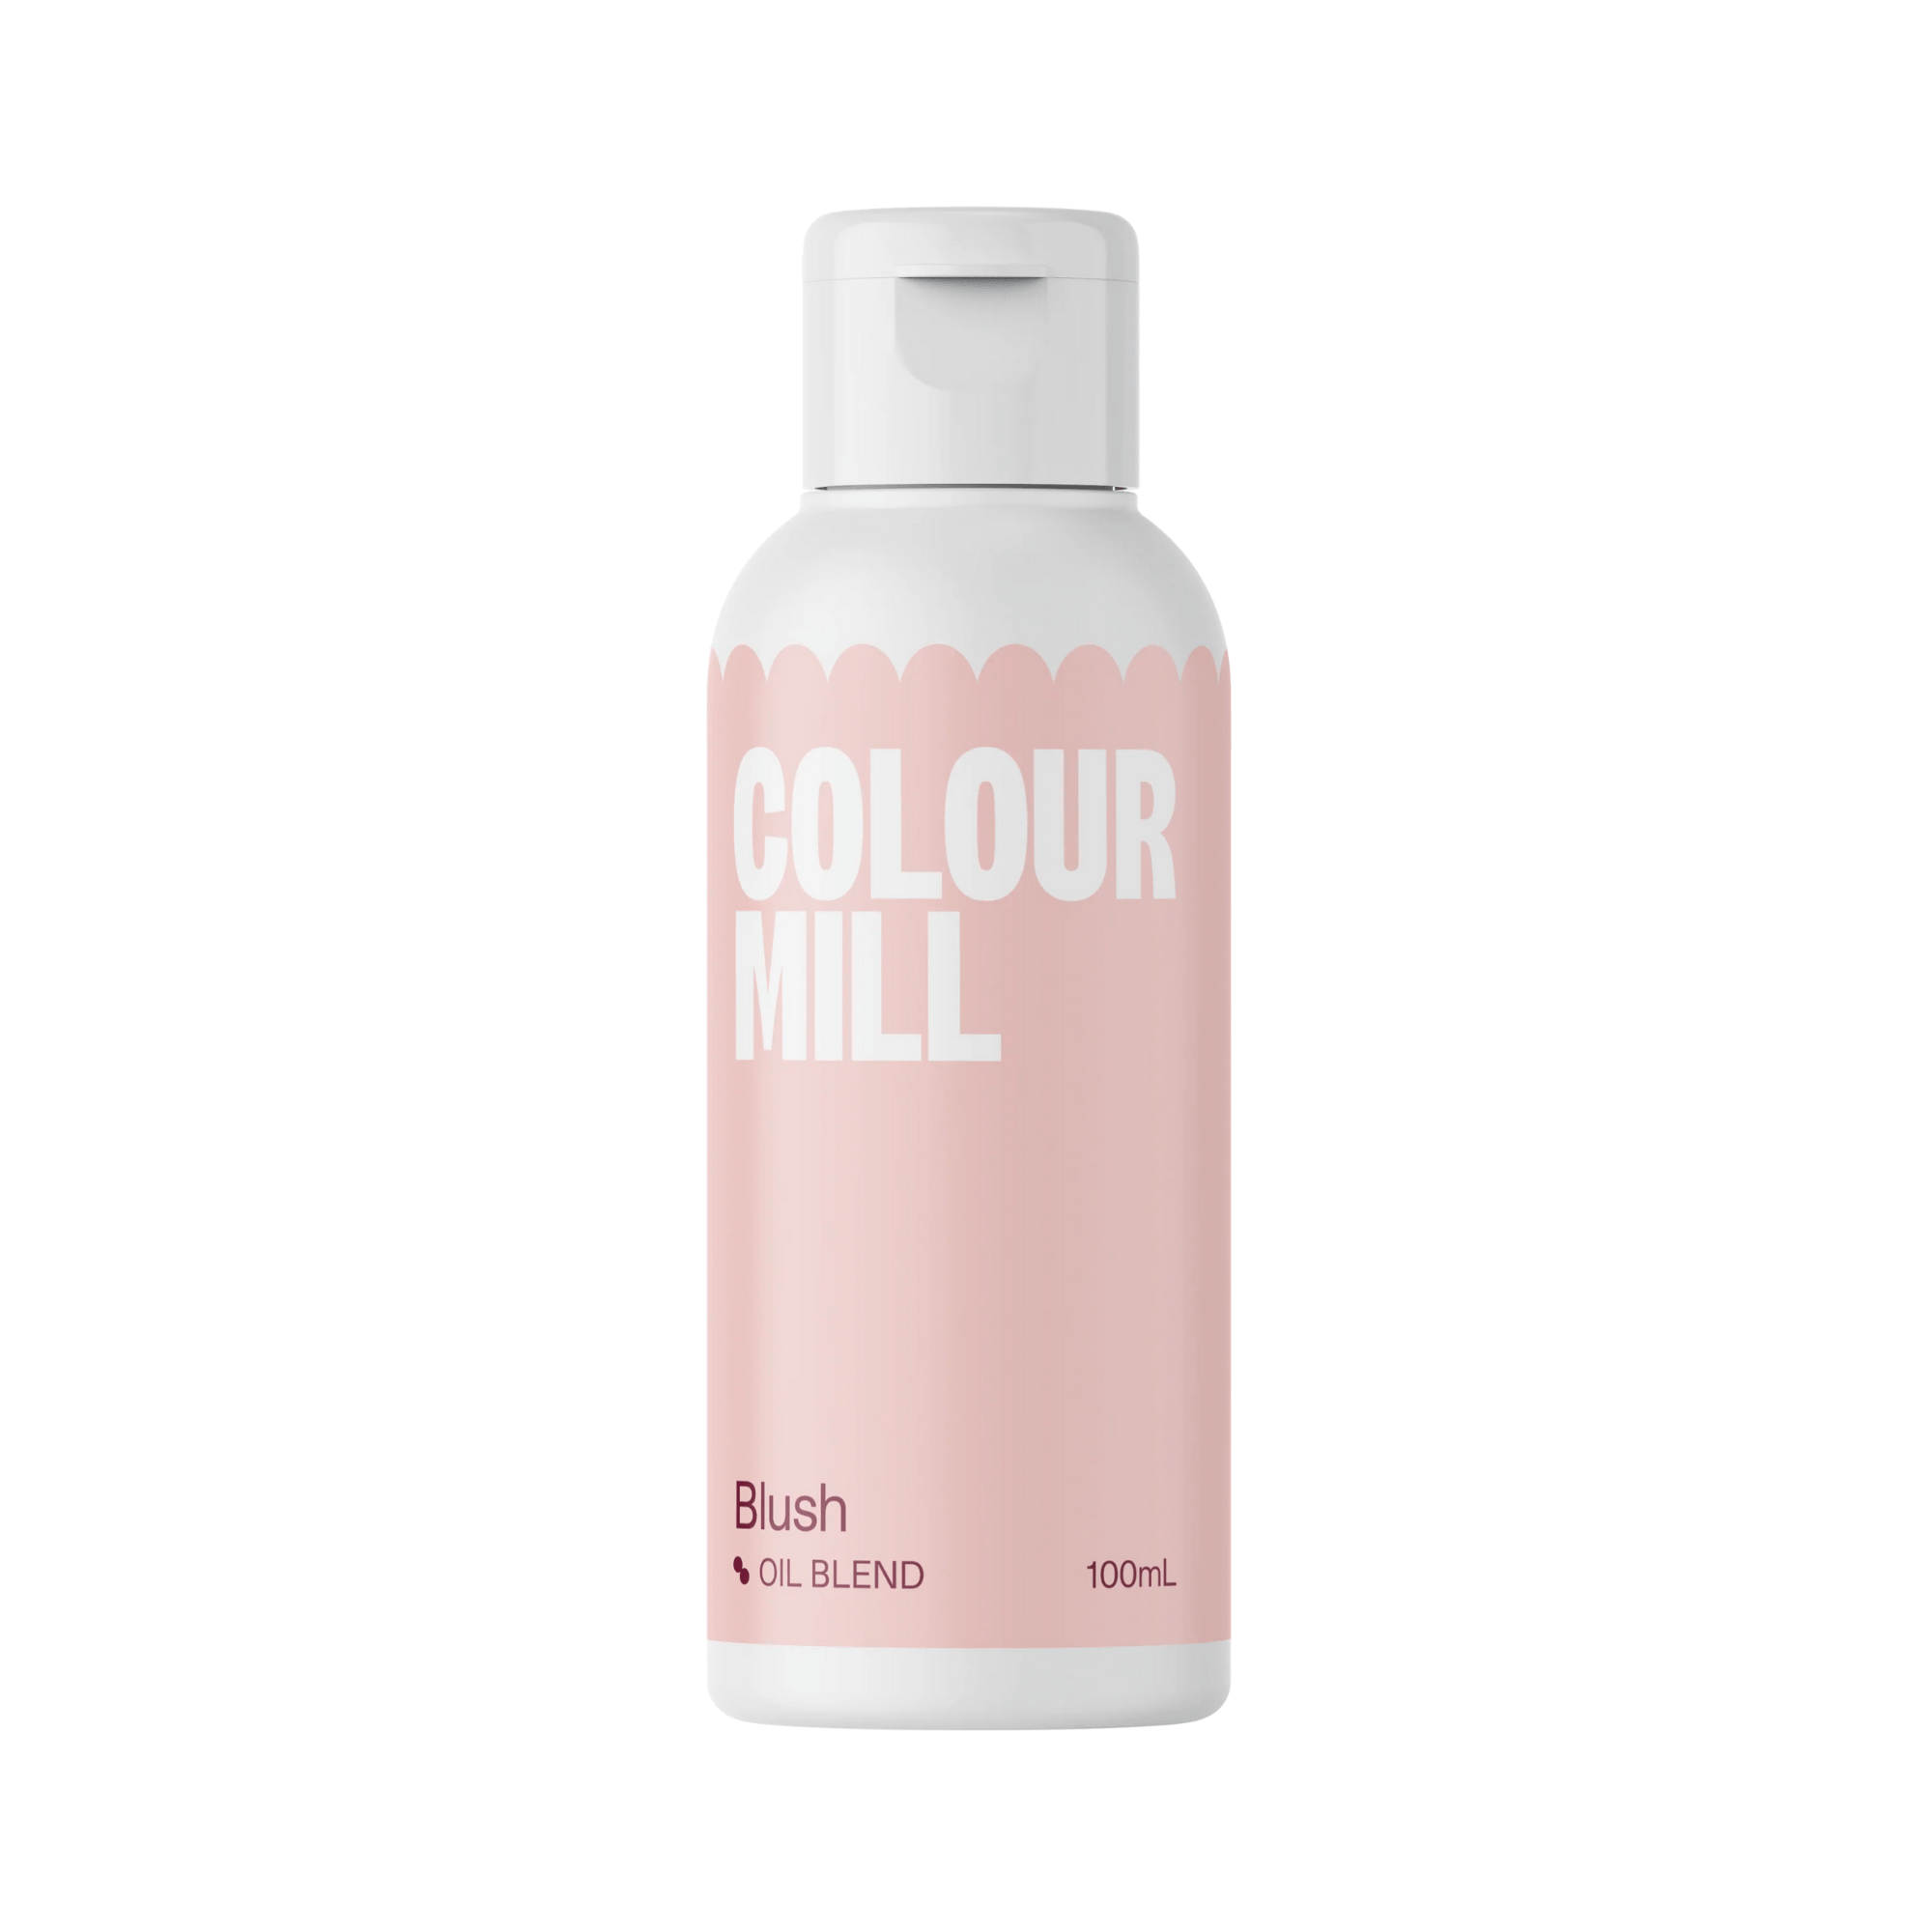 Happy Sprinkles Streusel 100ml Colour Mill Blush - Oil Blend